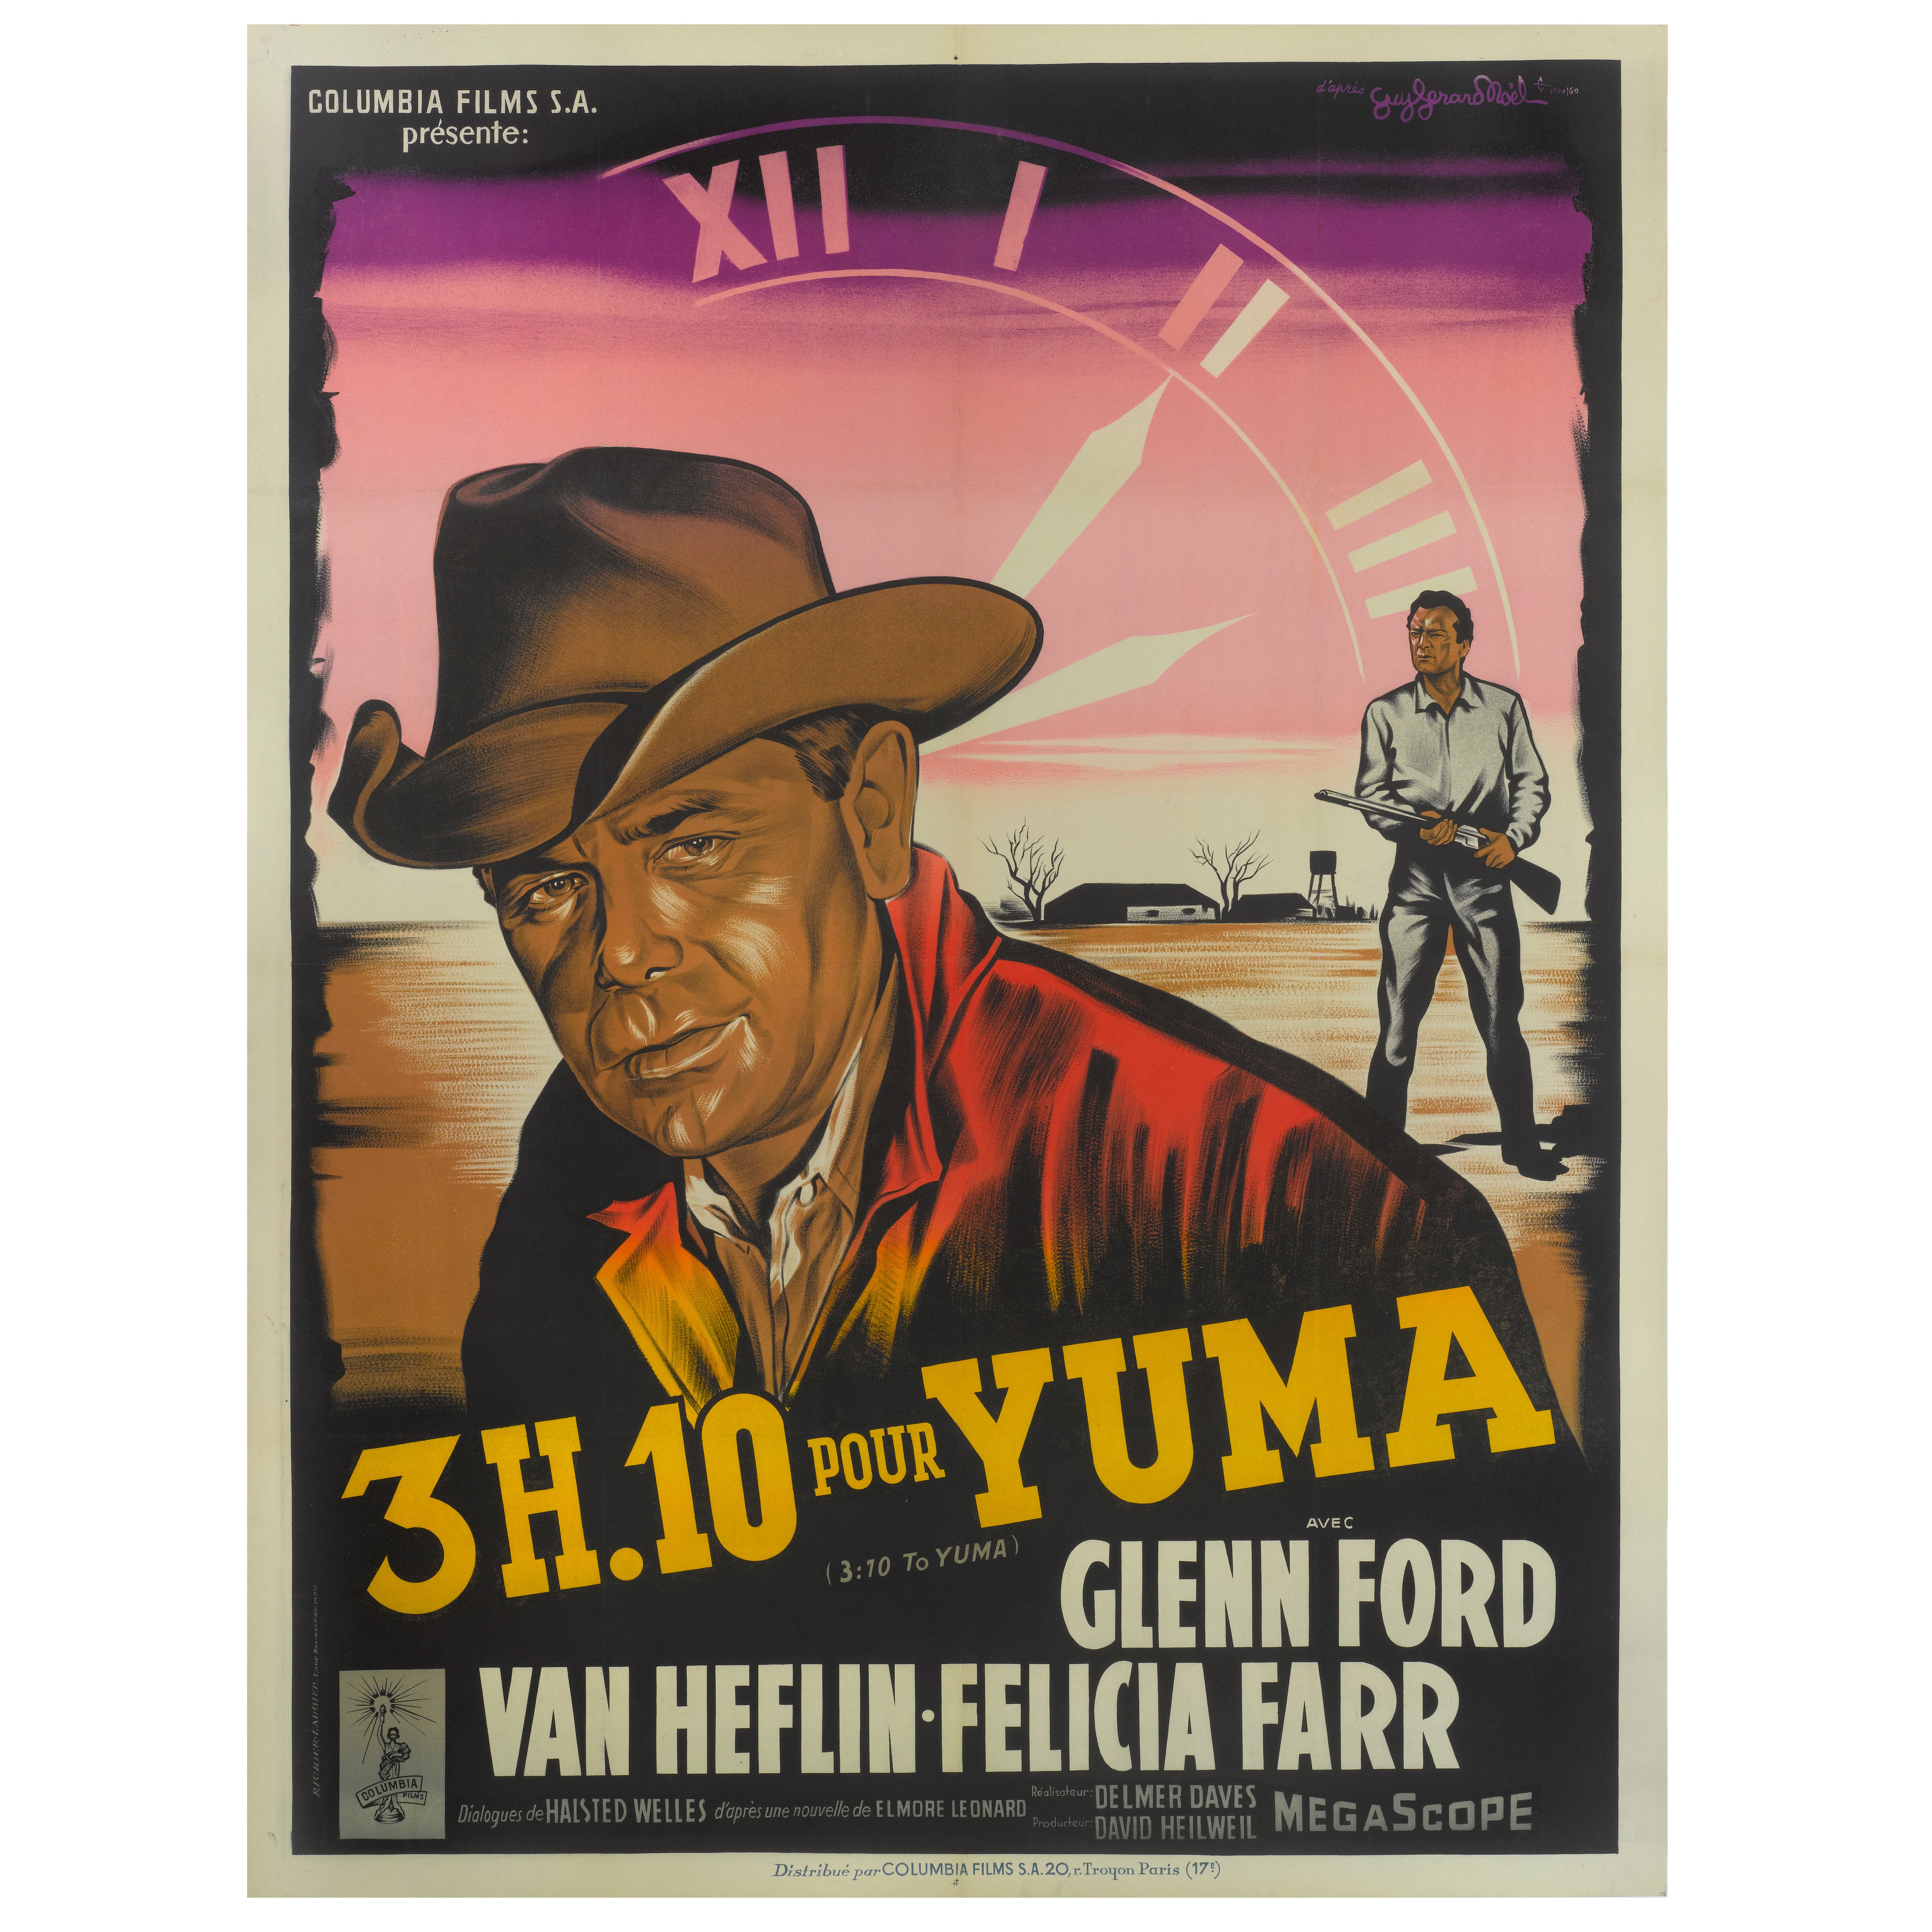 "3H.10 Pour Yuma" Original French Film Poster